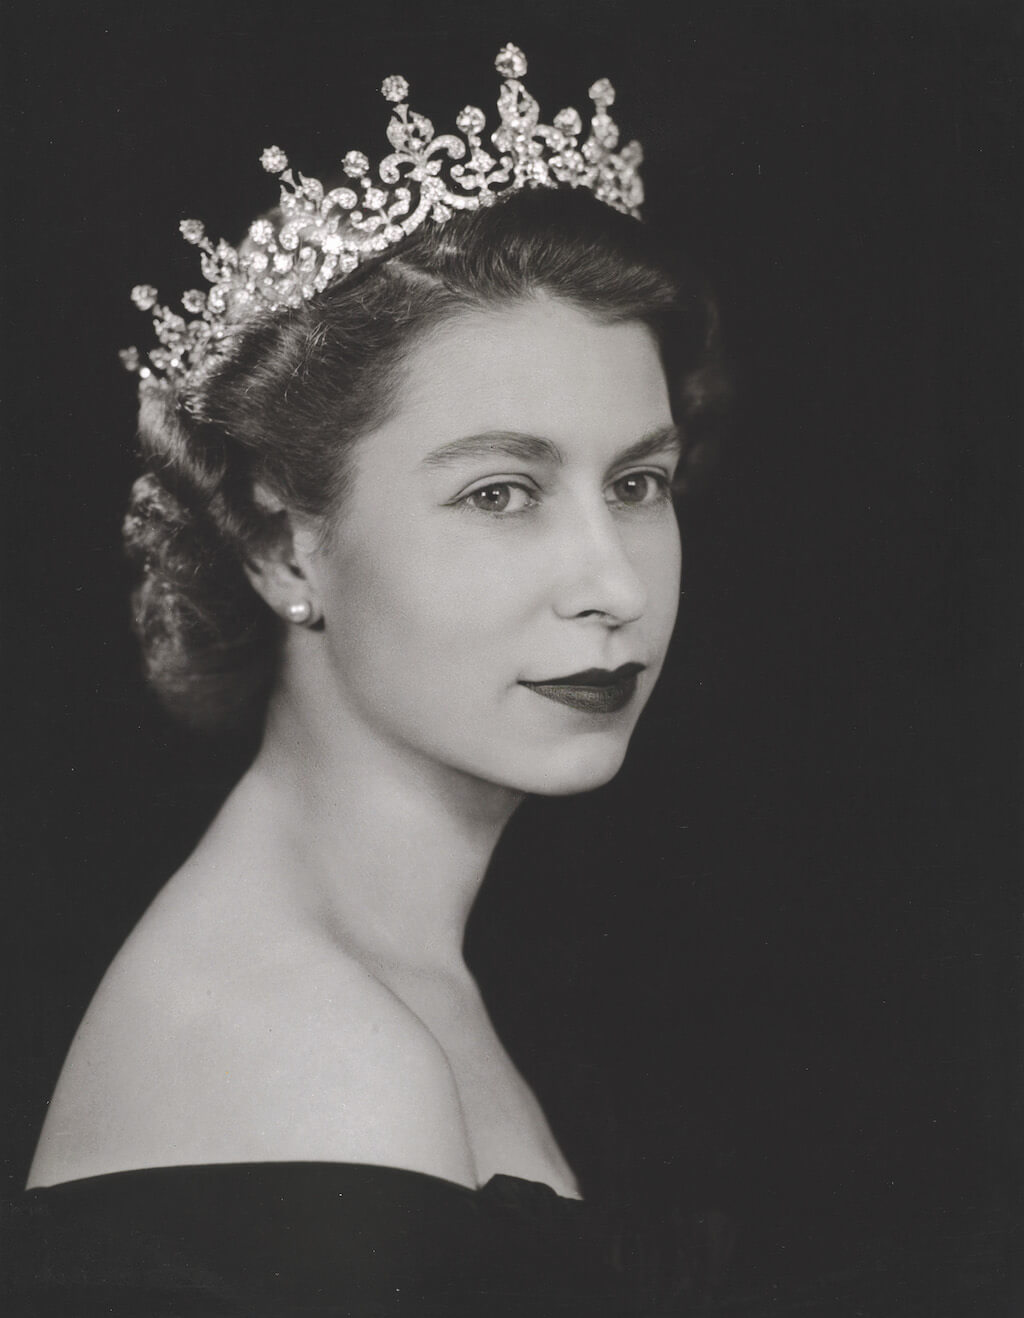 תערוכה בלונדון - על המלכה אליזבת